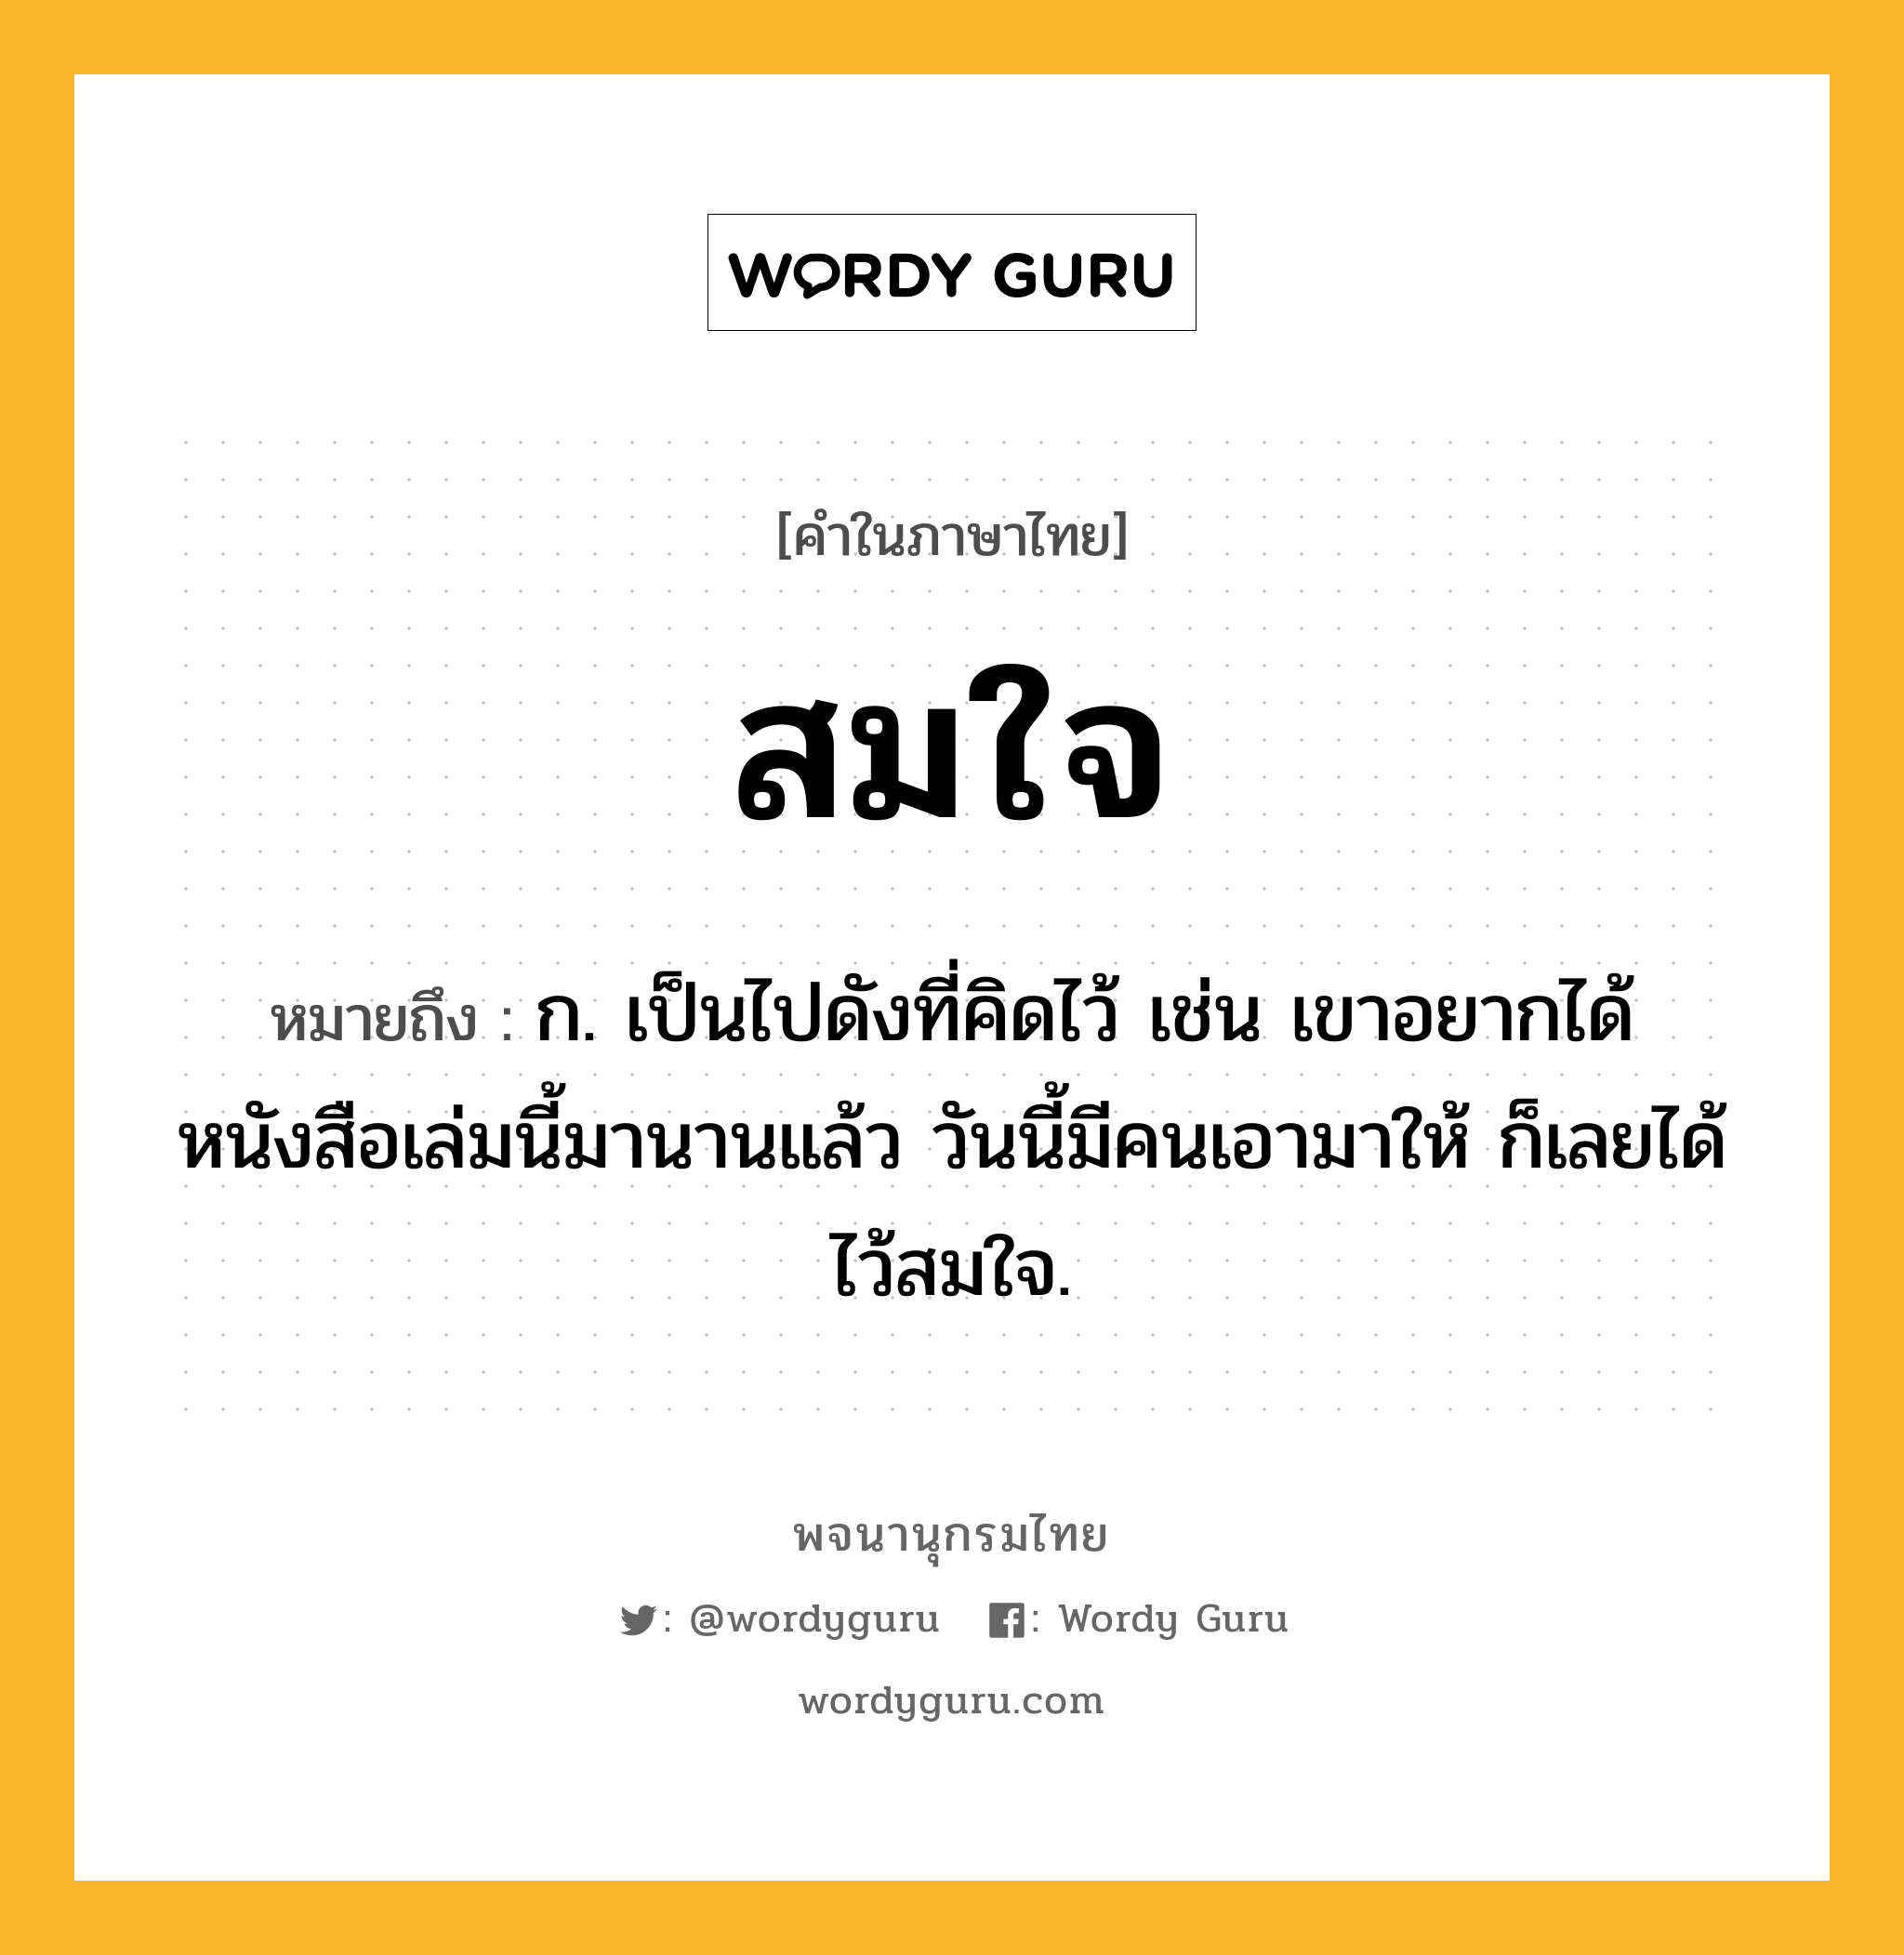 สมใจ หมายถึงอะไร?, คำในภาษาไทย สมใจ หมายถึง ก. เป็นไปดังที่คิดไว้ เช่น เขาอยากได้หนังสือเล่มนี้มานานแล้ว วันนี้มีคนเอามาให้ ก็เลยได้ไว้สมใจ.